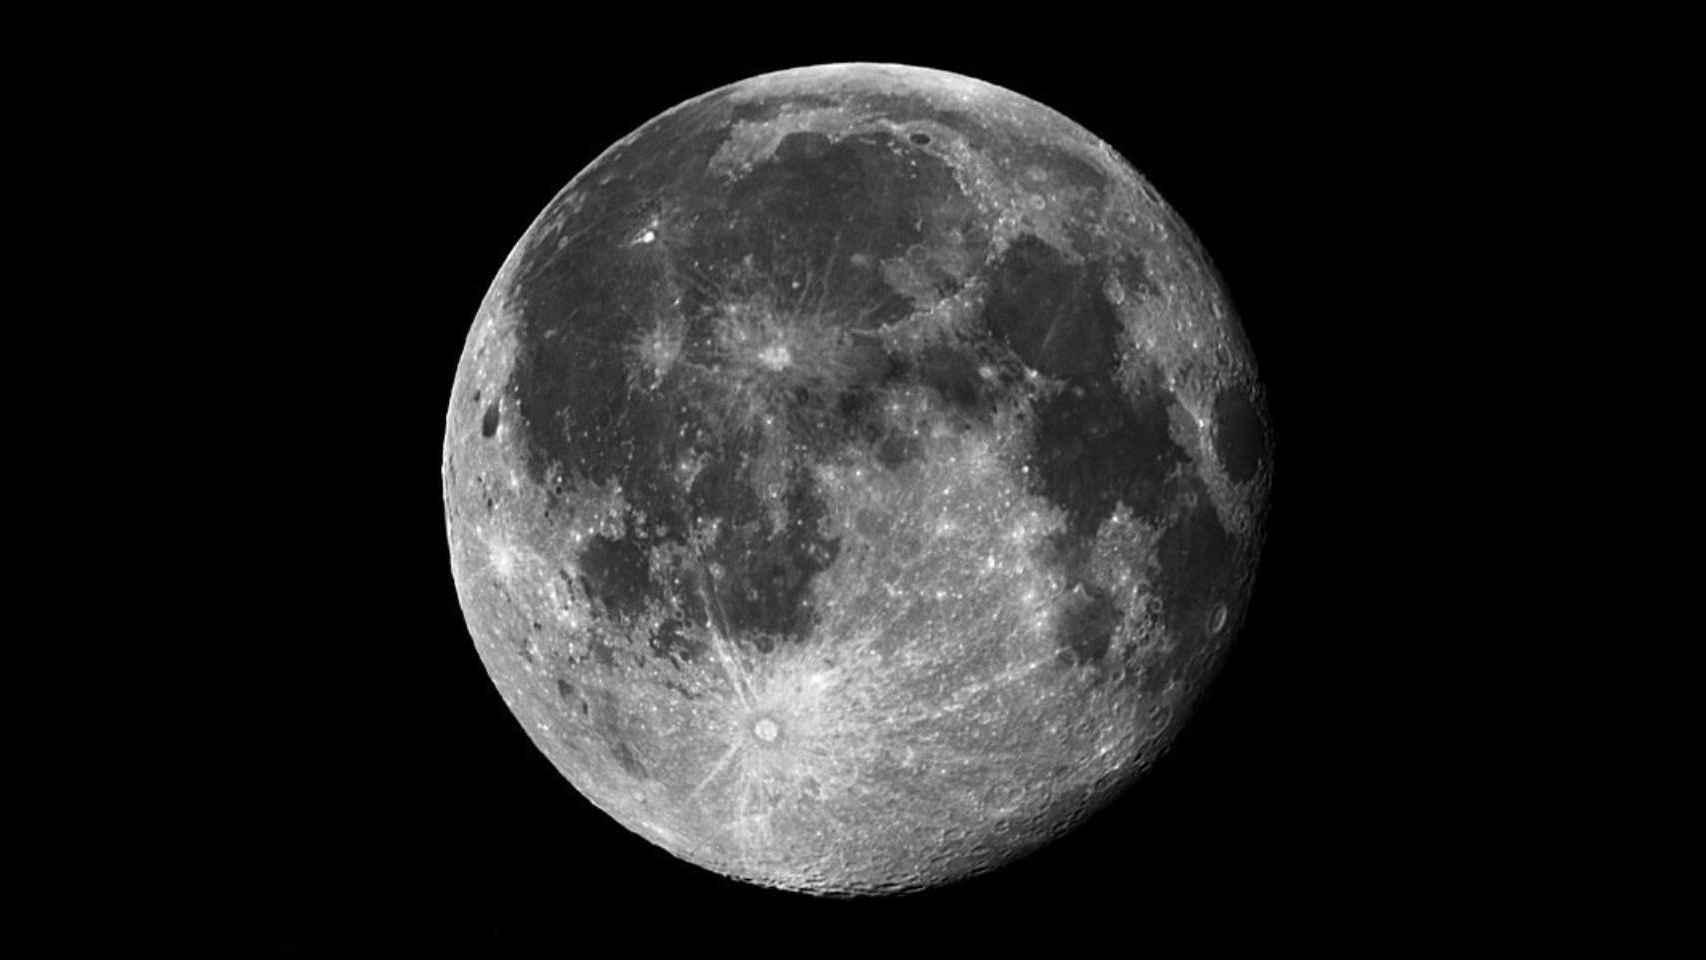 Imagen en alta resolución de la Luna.